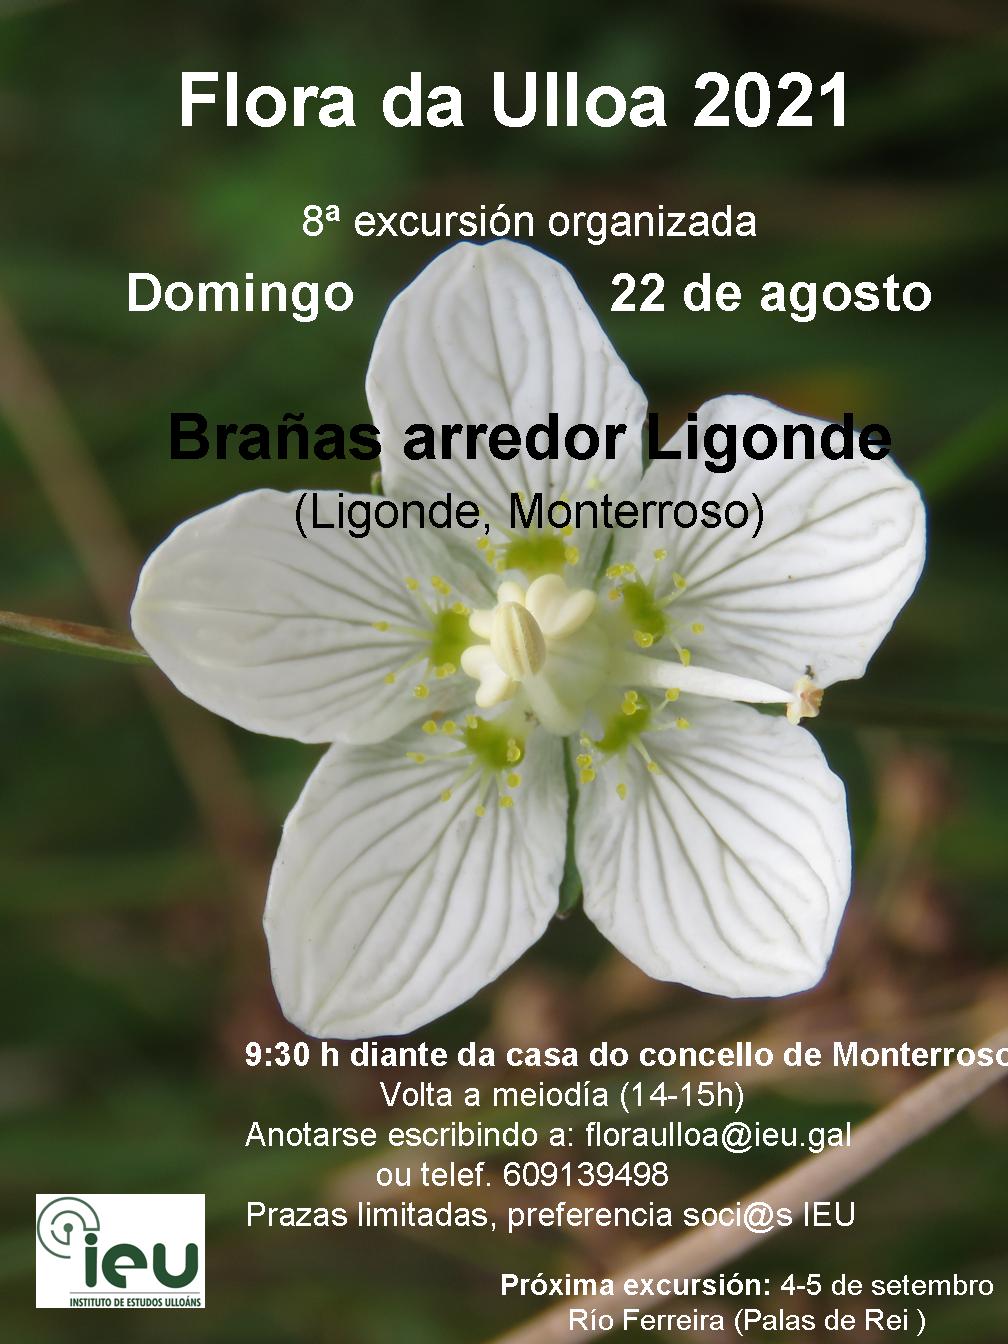 Excursión Flora da Ulloa 8ª-2021 Ligonde, Instituto de Estudos Ulloáns